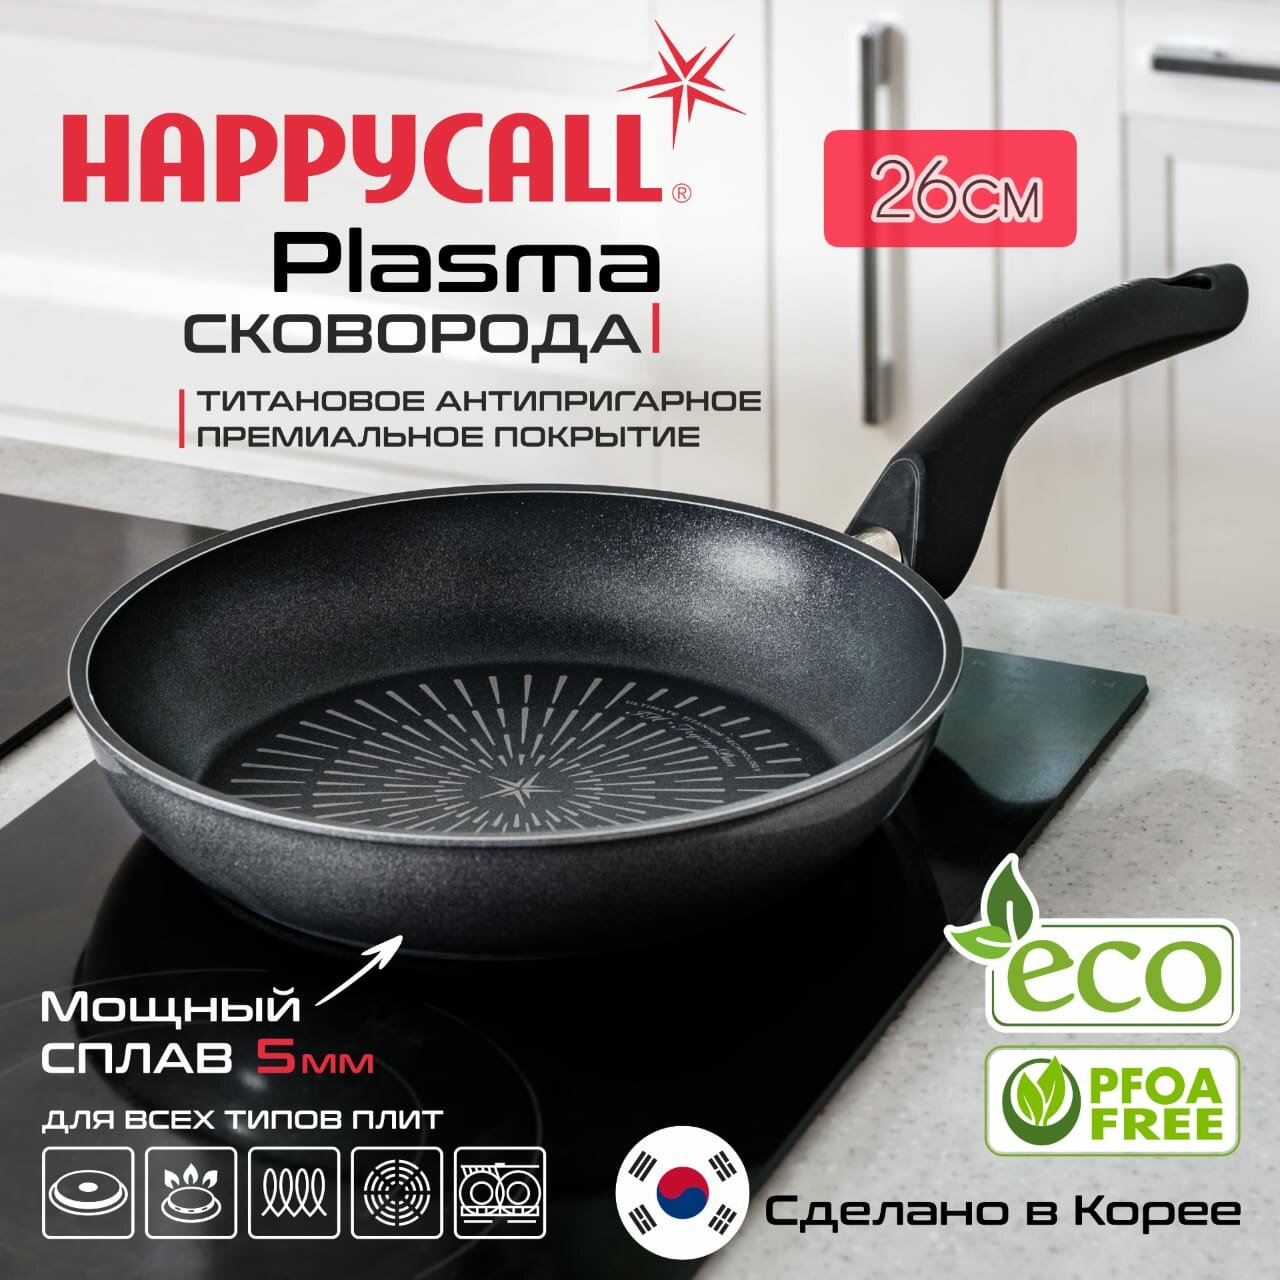 Сковорода Happycall Plasma 26см